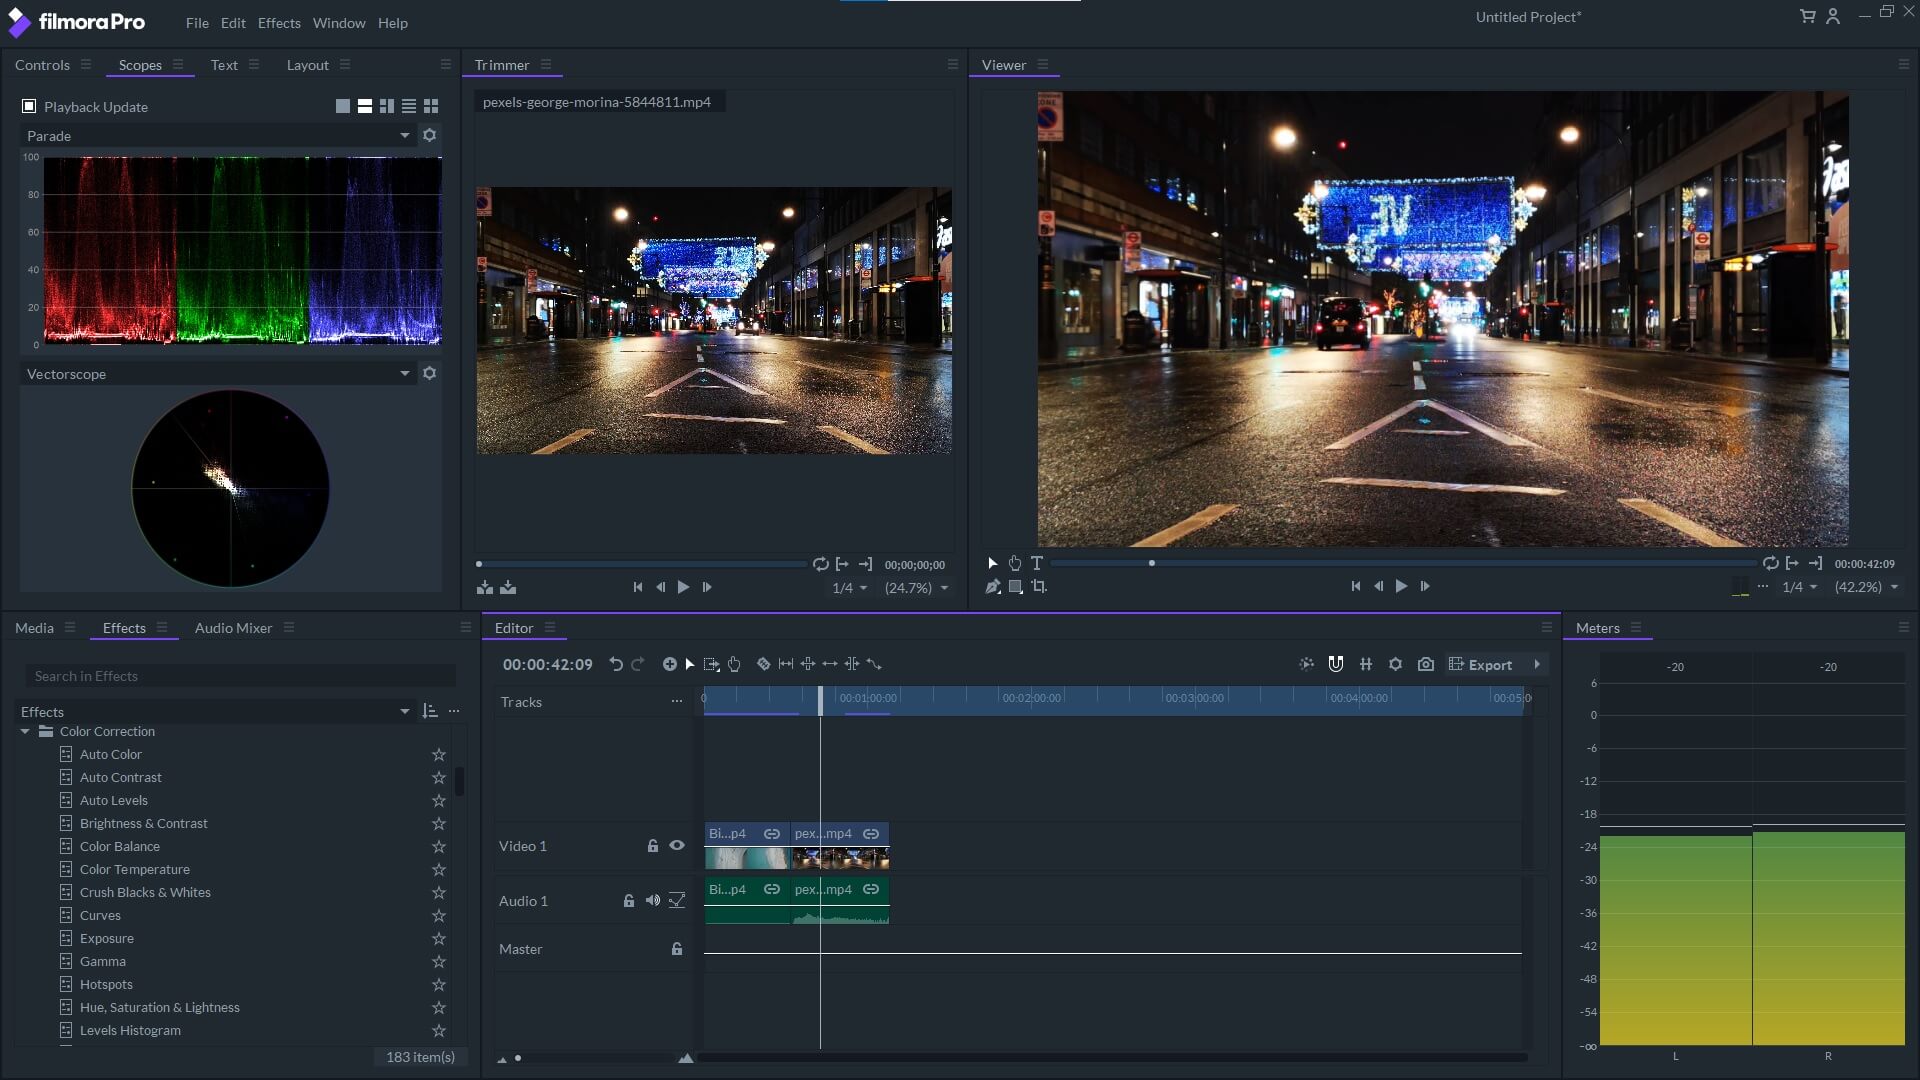 FilmoraPro Video Editor UI